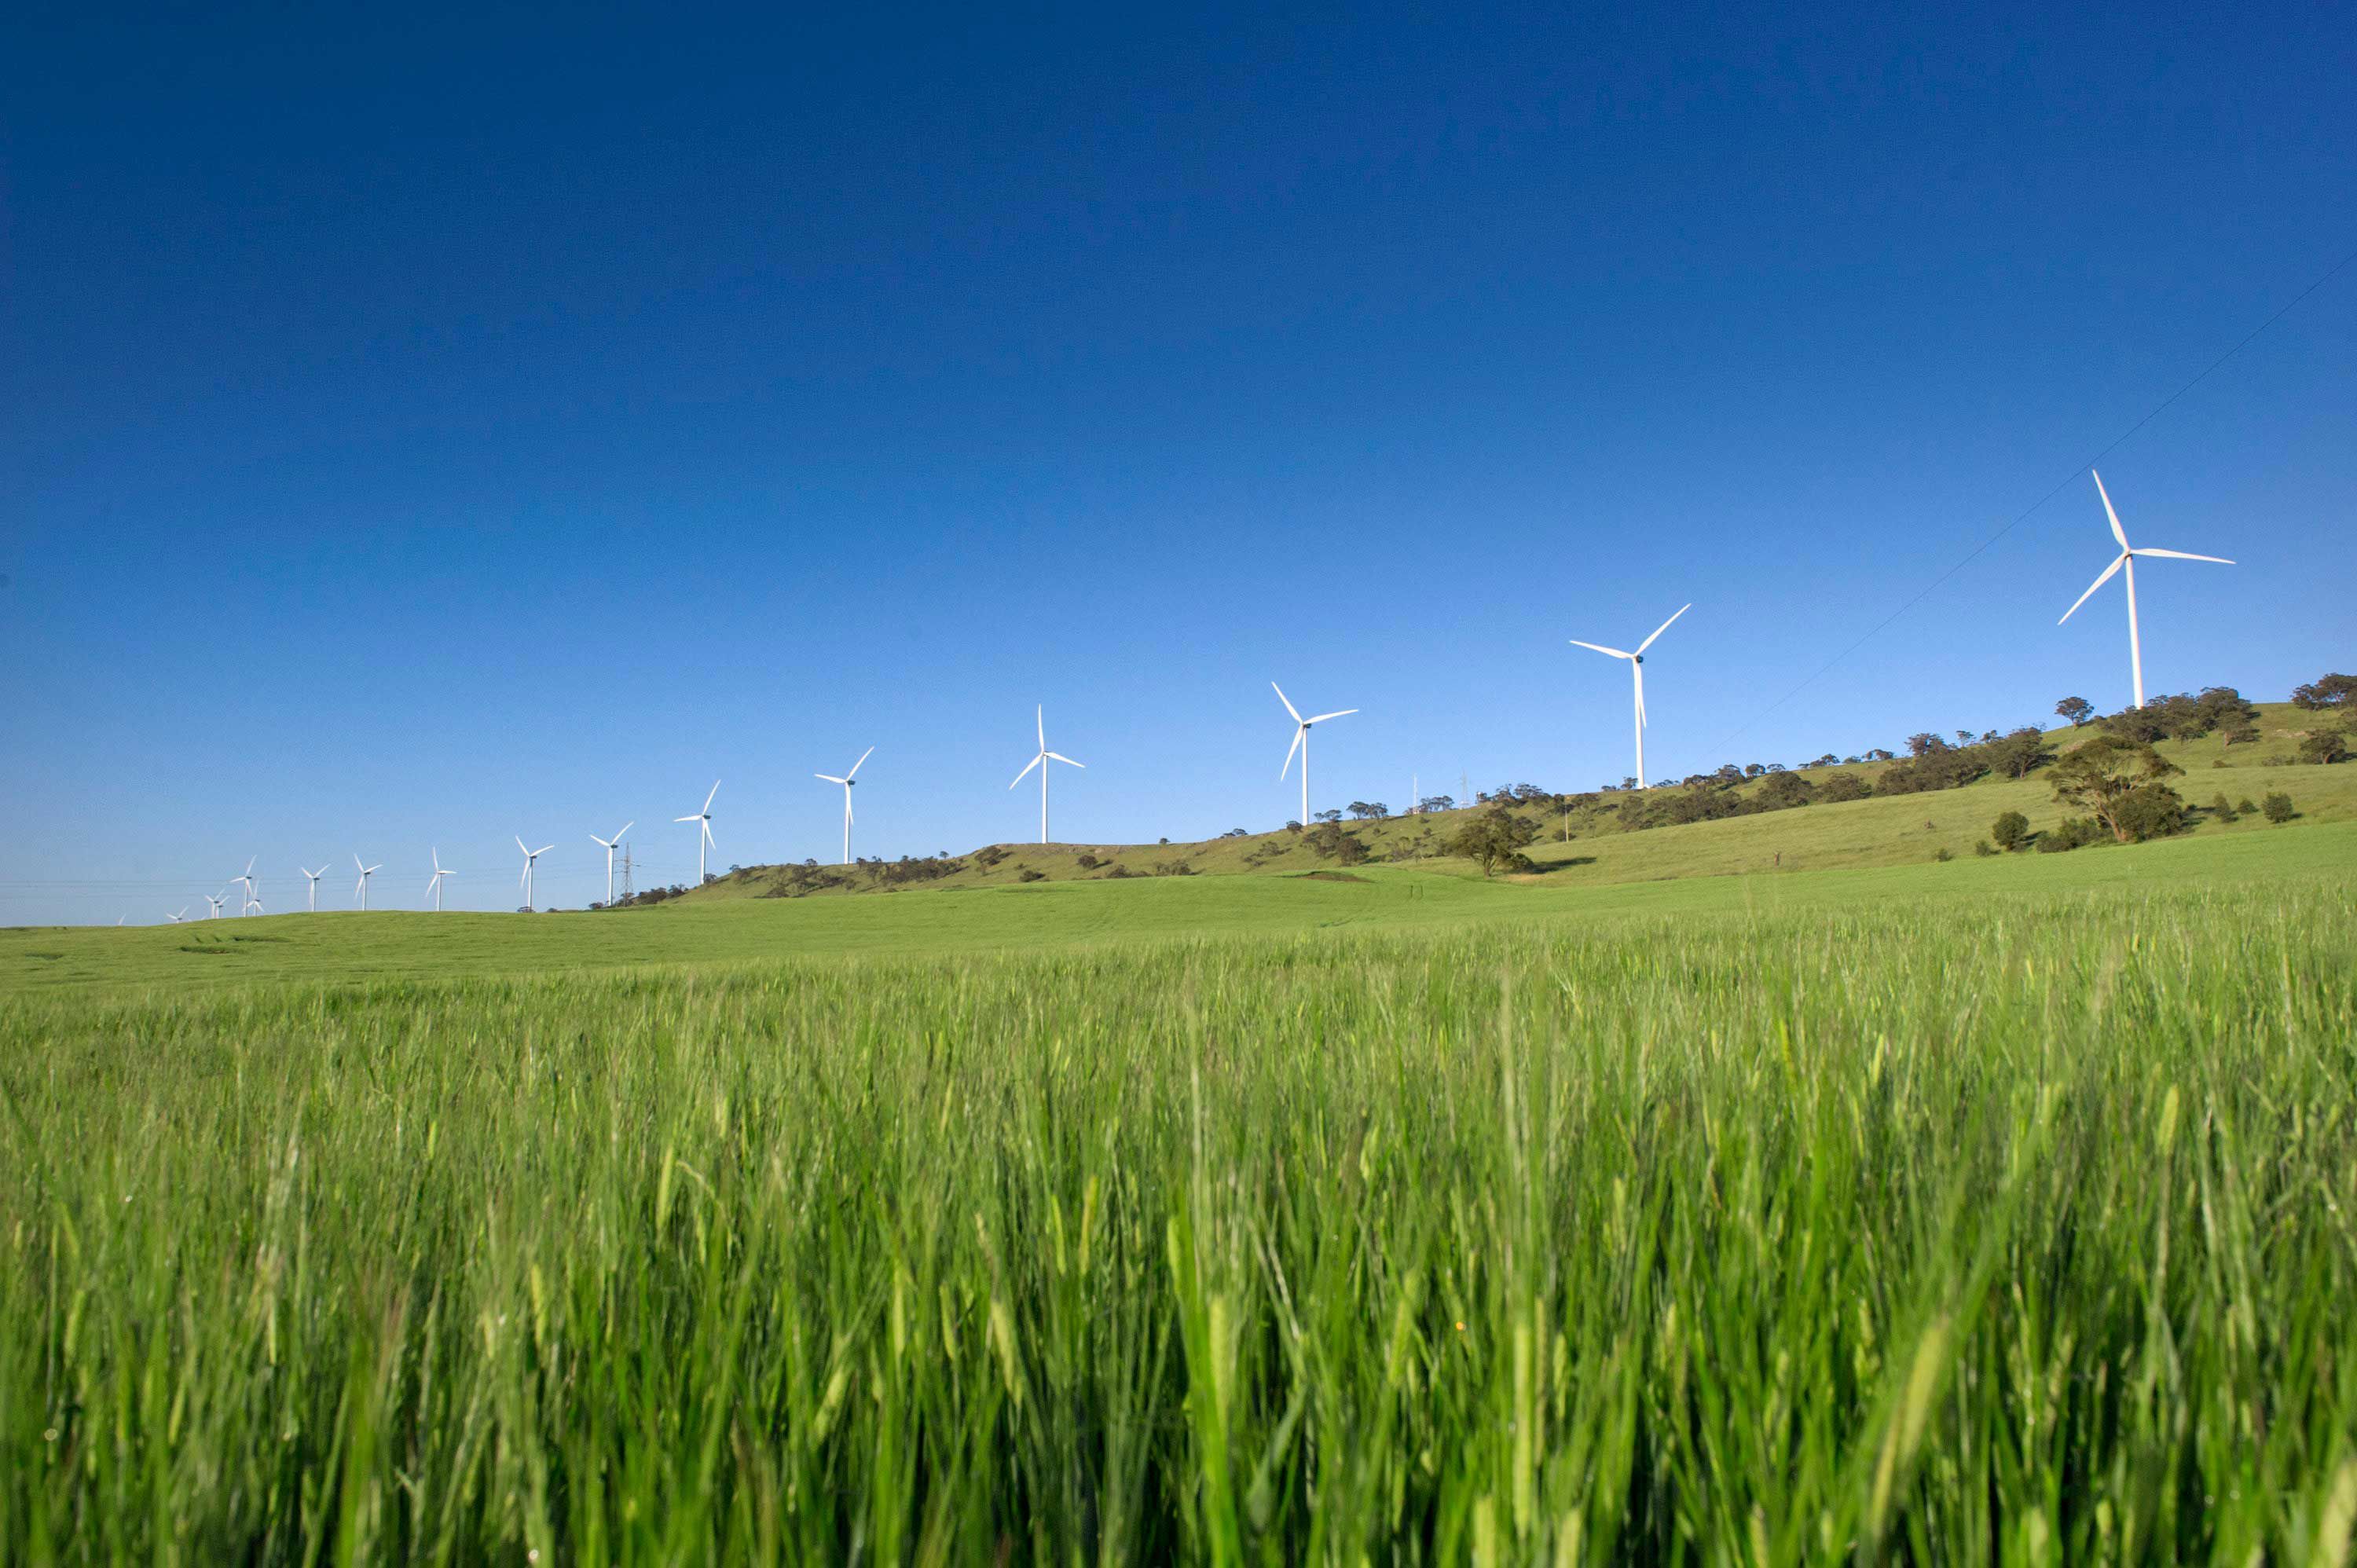 Palisade Renewable Energy Fund targets investors seeking exposure to clean energy